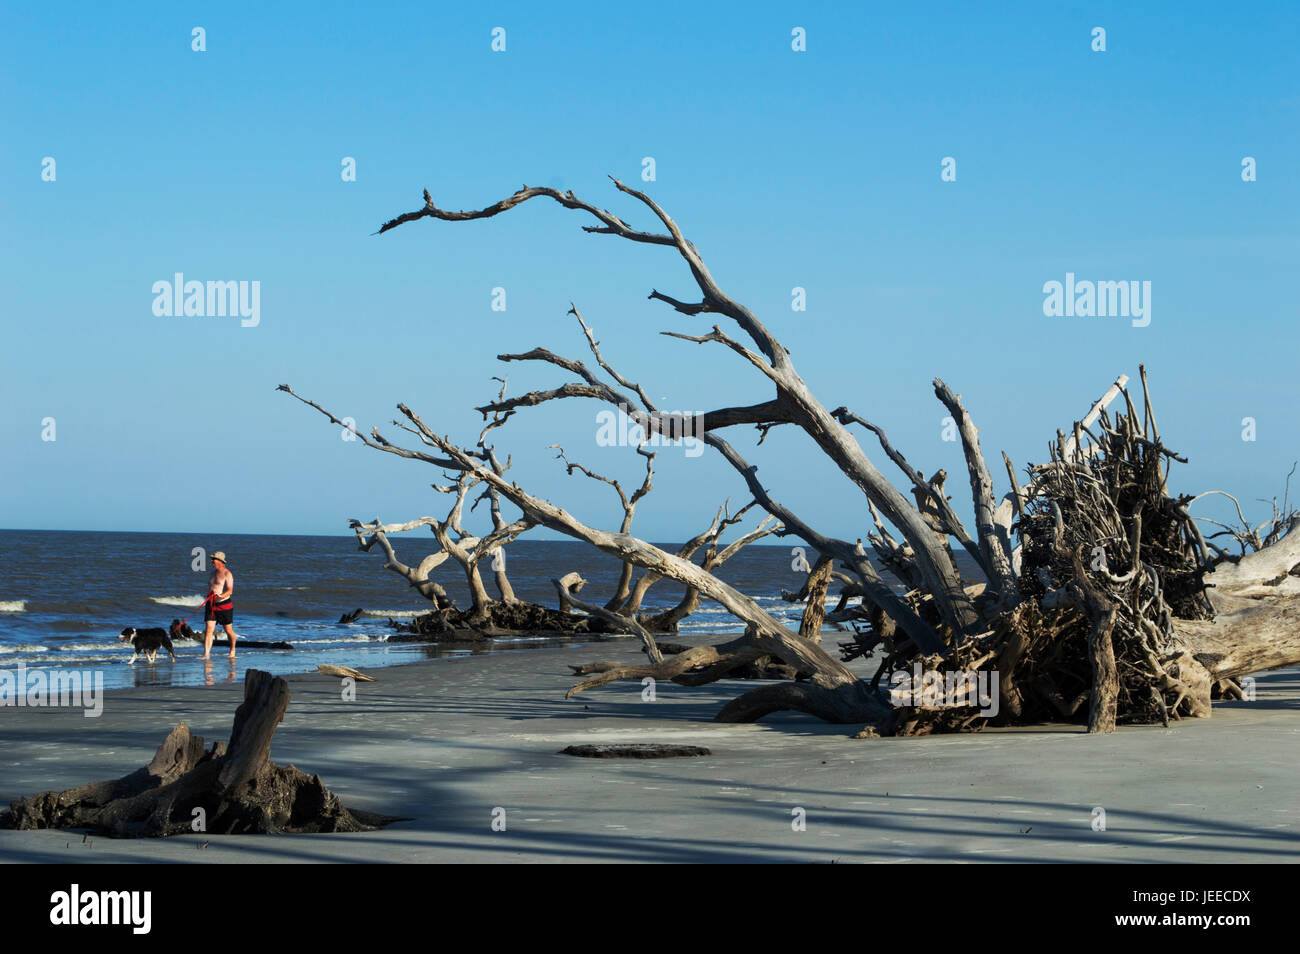 Un chien marche sur driftwood beach Banque D'Images